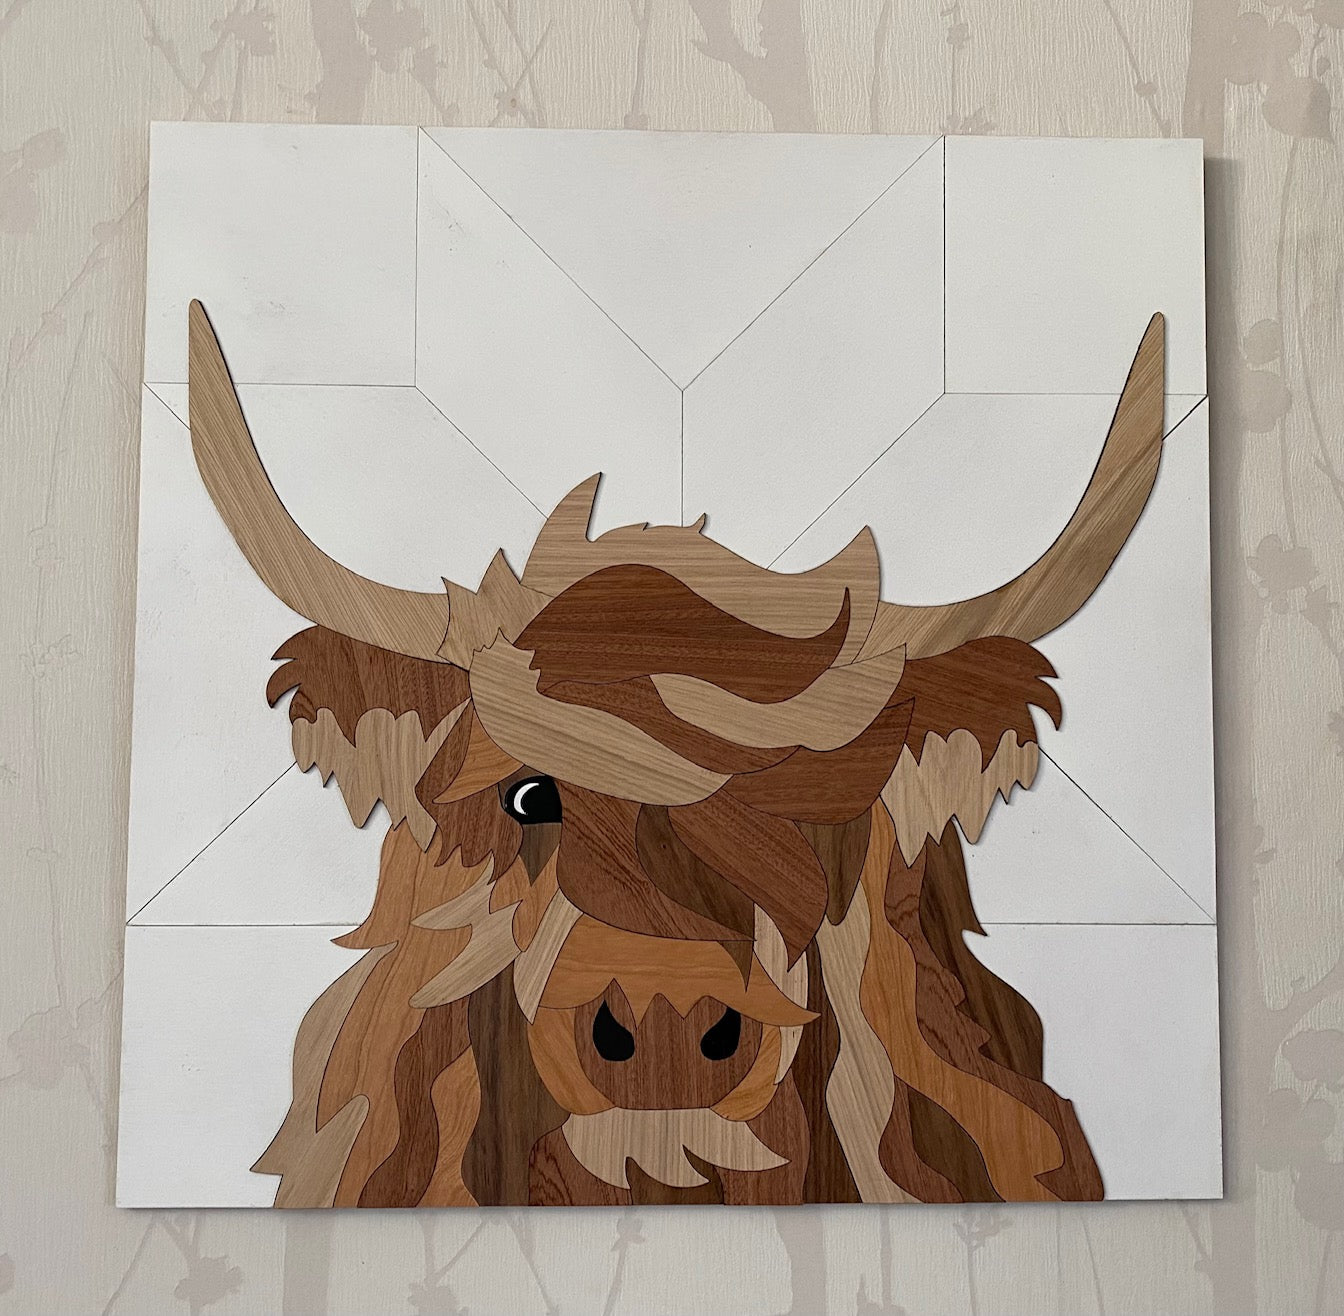 Inlay Highland Cow Wall Art 18" x 18"